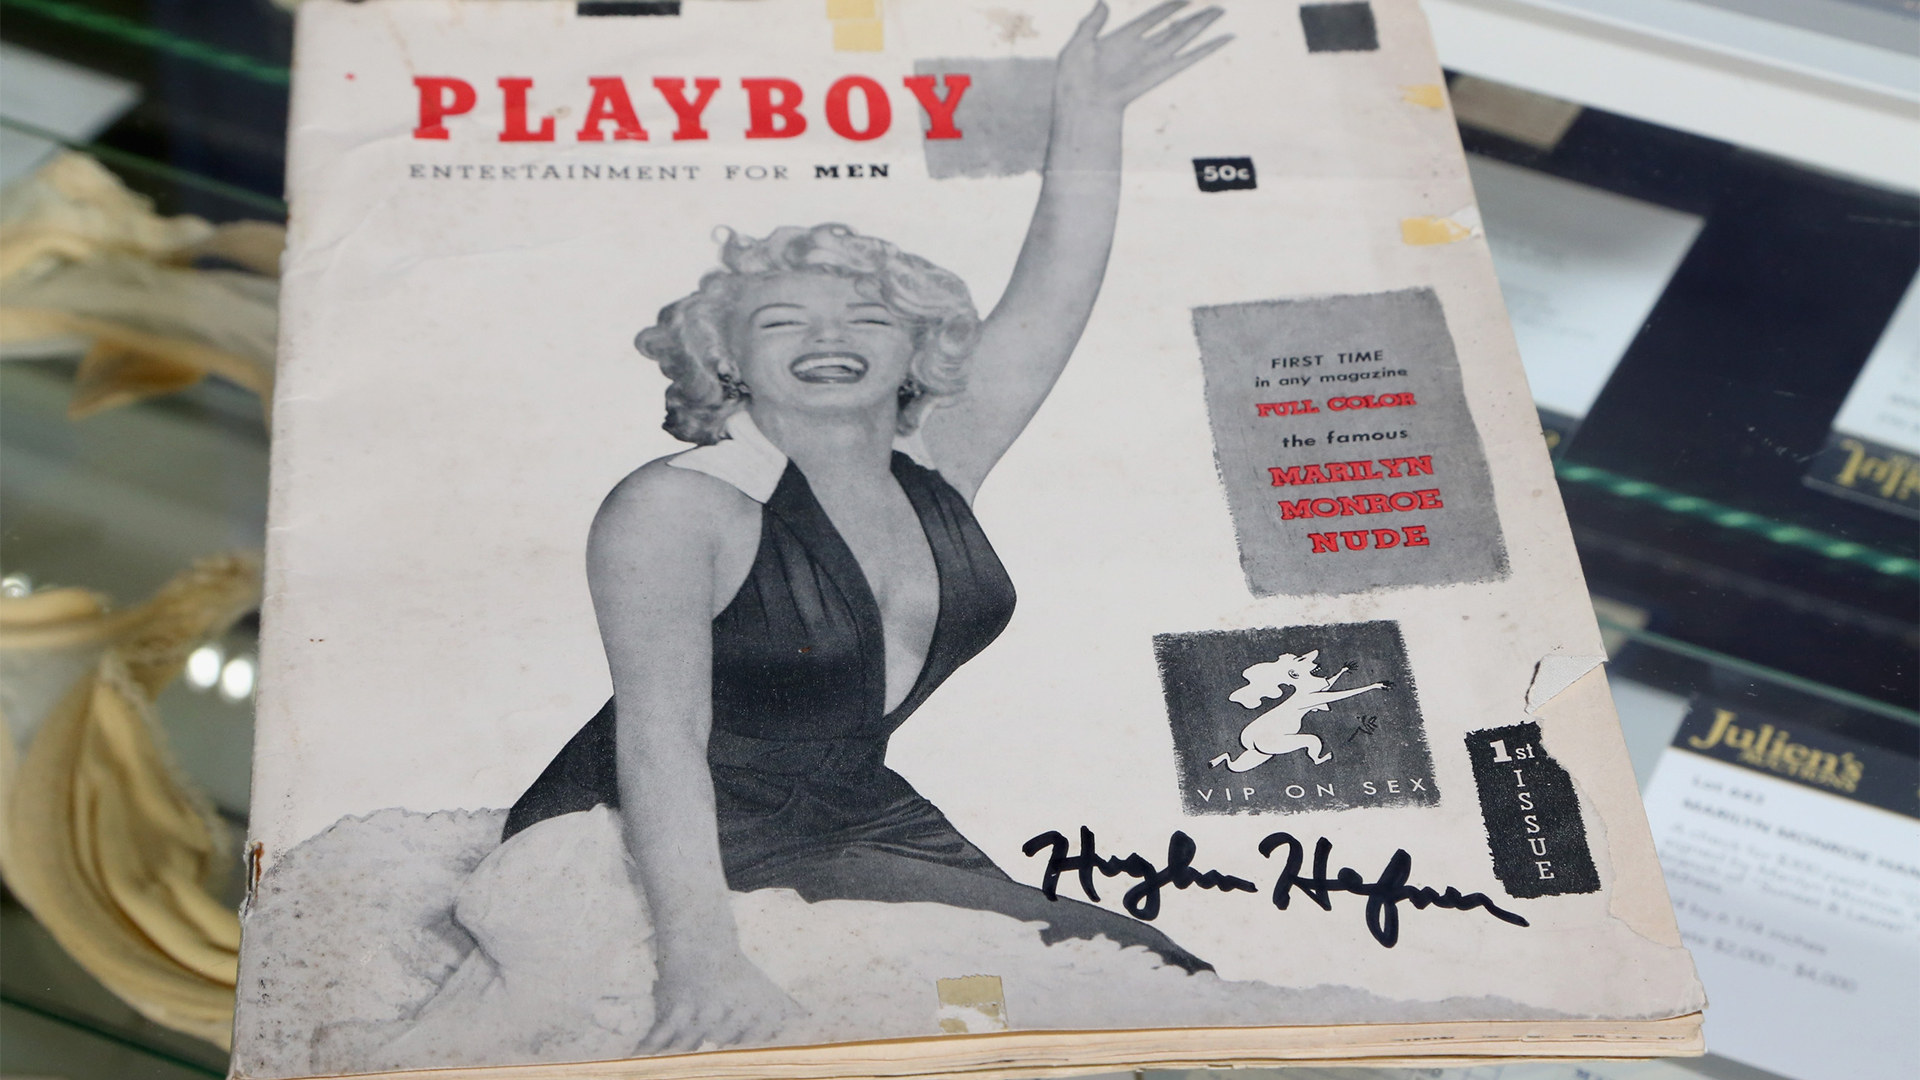 Most először szerepel nyíltan meleg férfi a Playboy címlapján